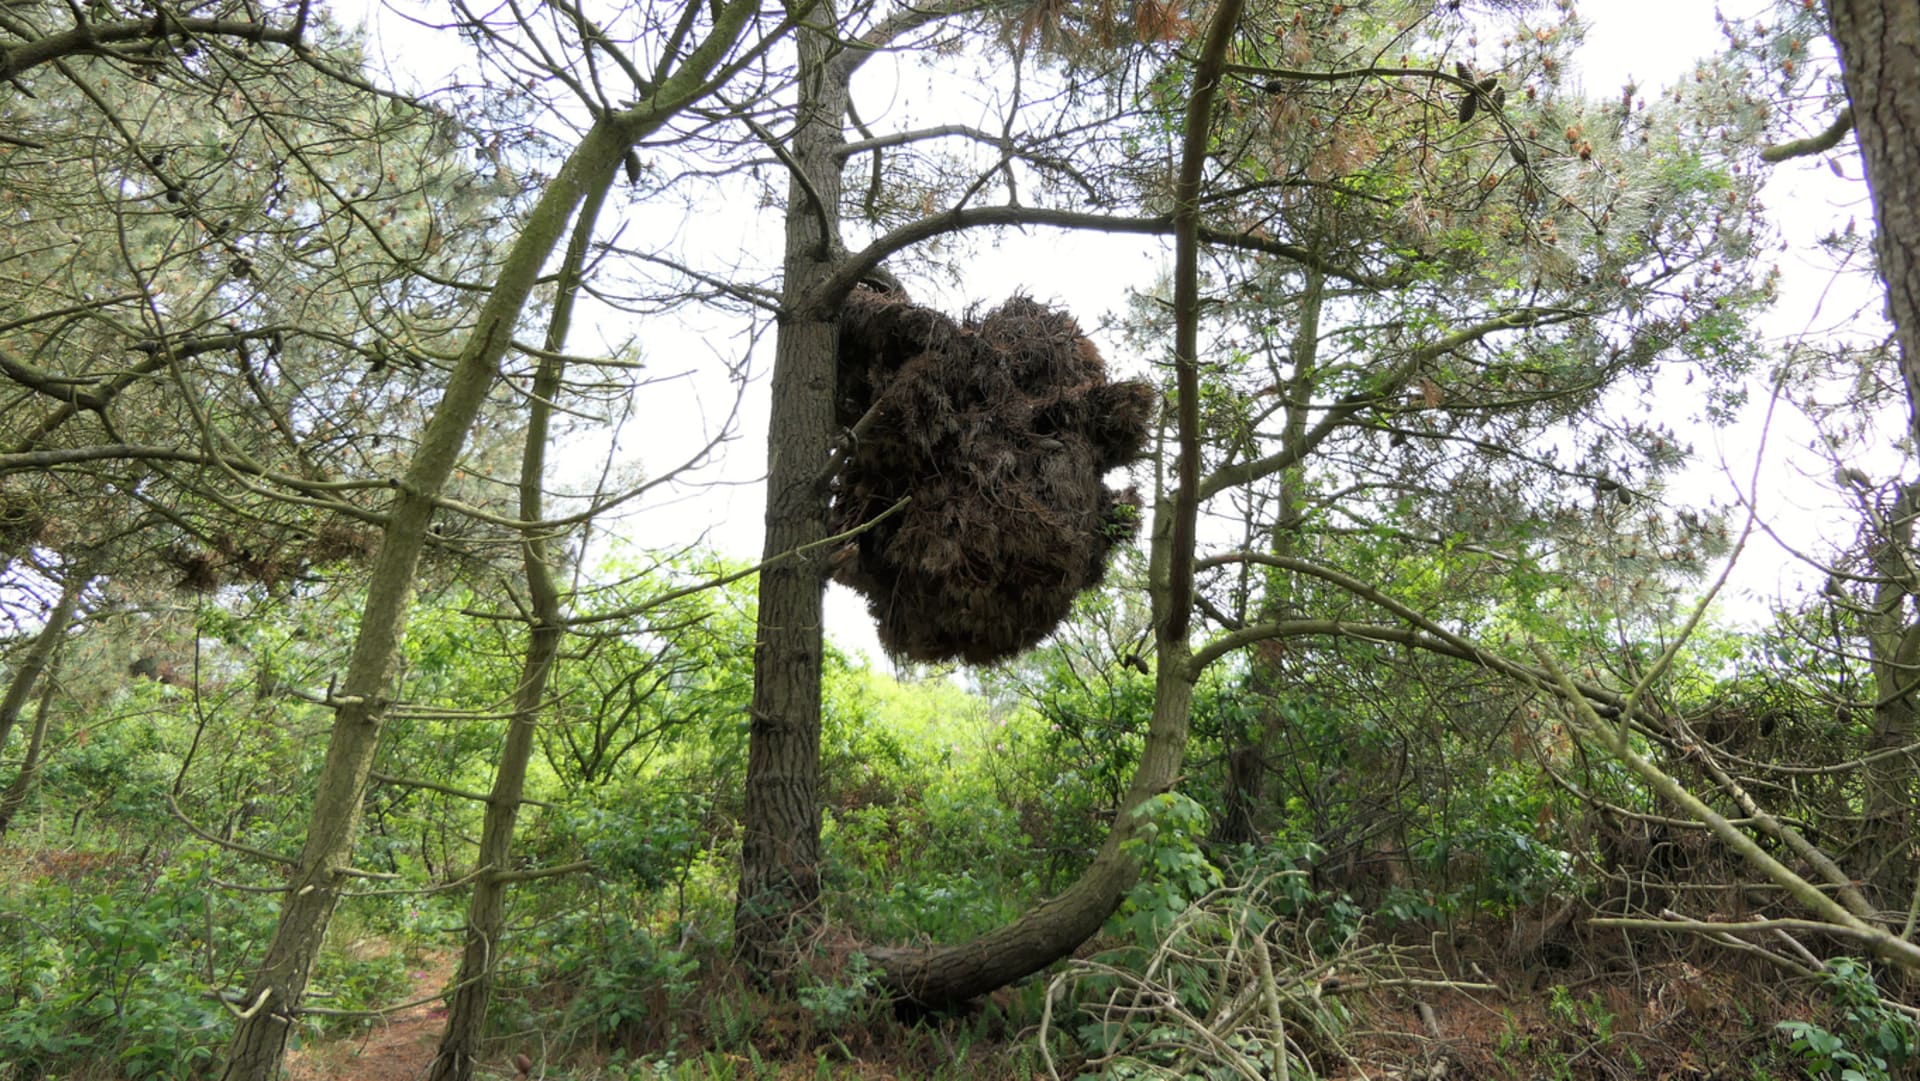 Čarověníky: Zajímavá hnízda na větvích stromů či keřů  